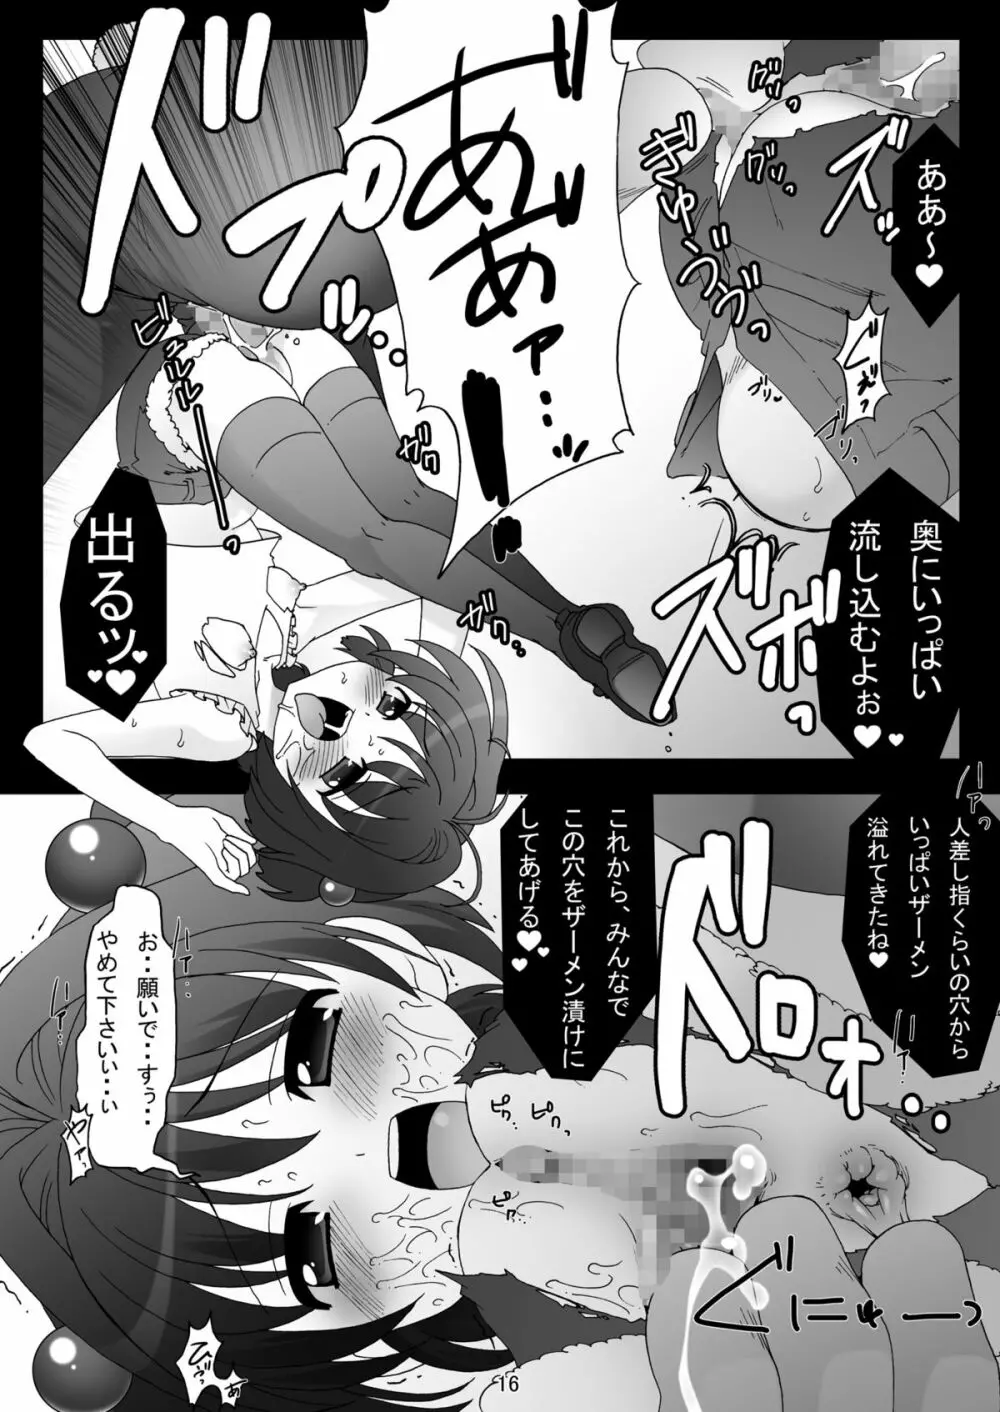 sakura twilight time - page16